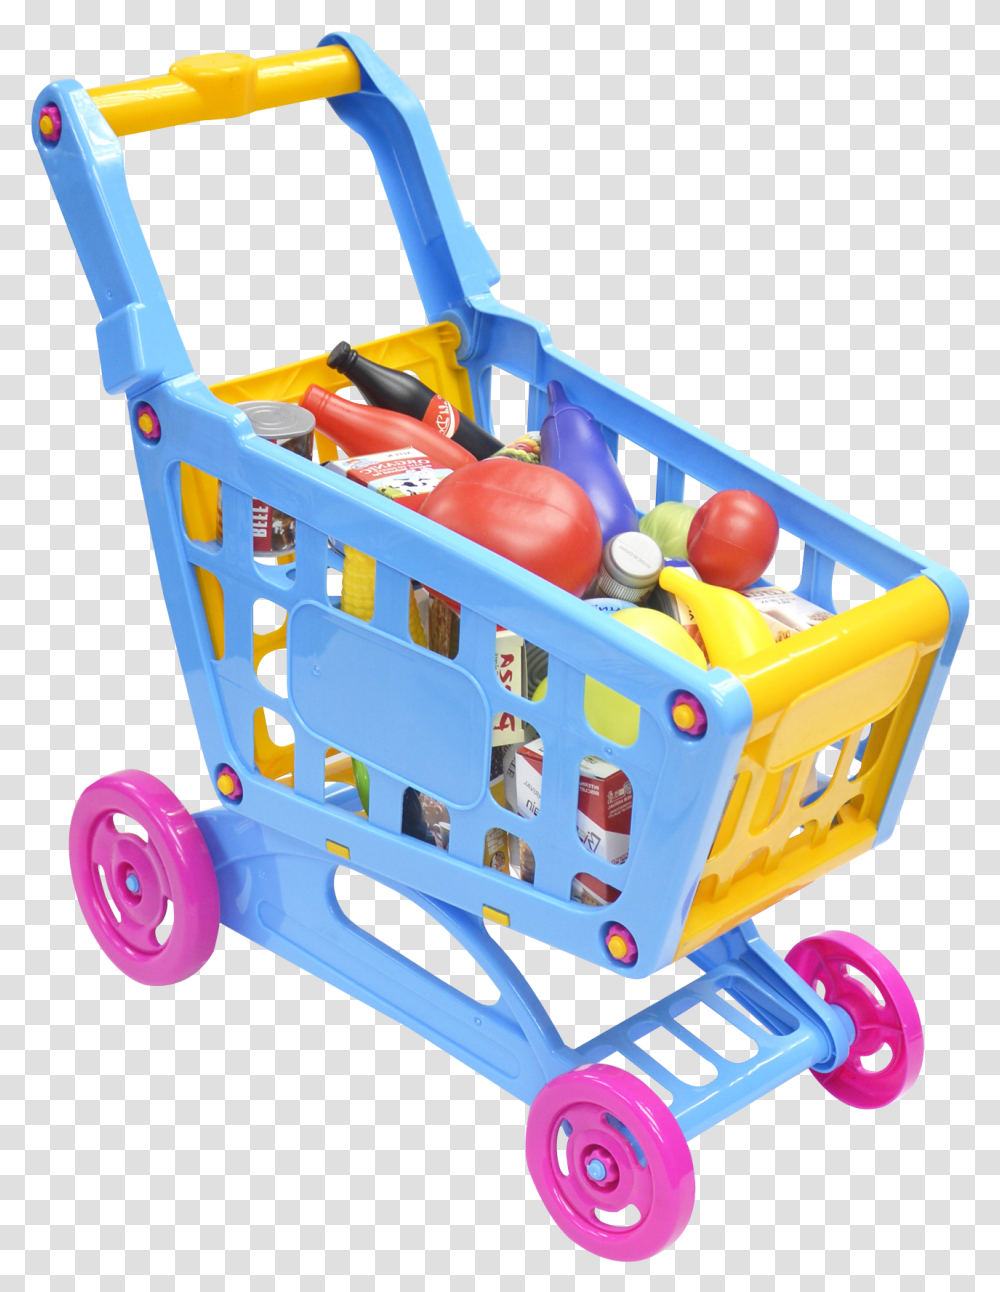 Shopping Cart Image Kids Shopping Cart, Lawn Mower, Tool, Toy, Basket Transparent Png